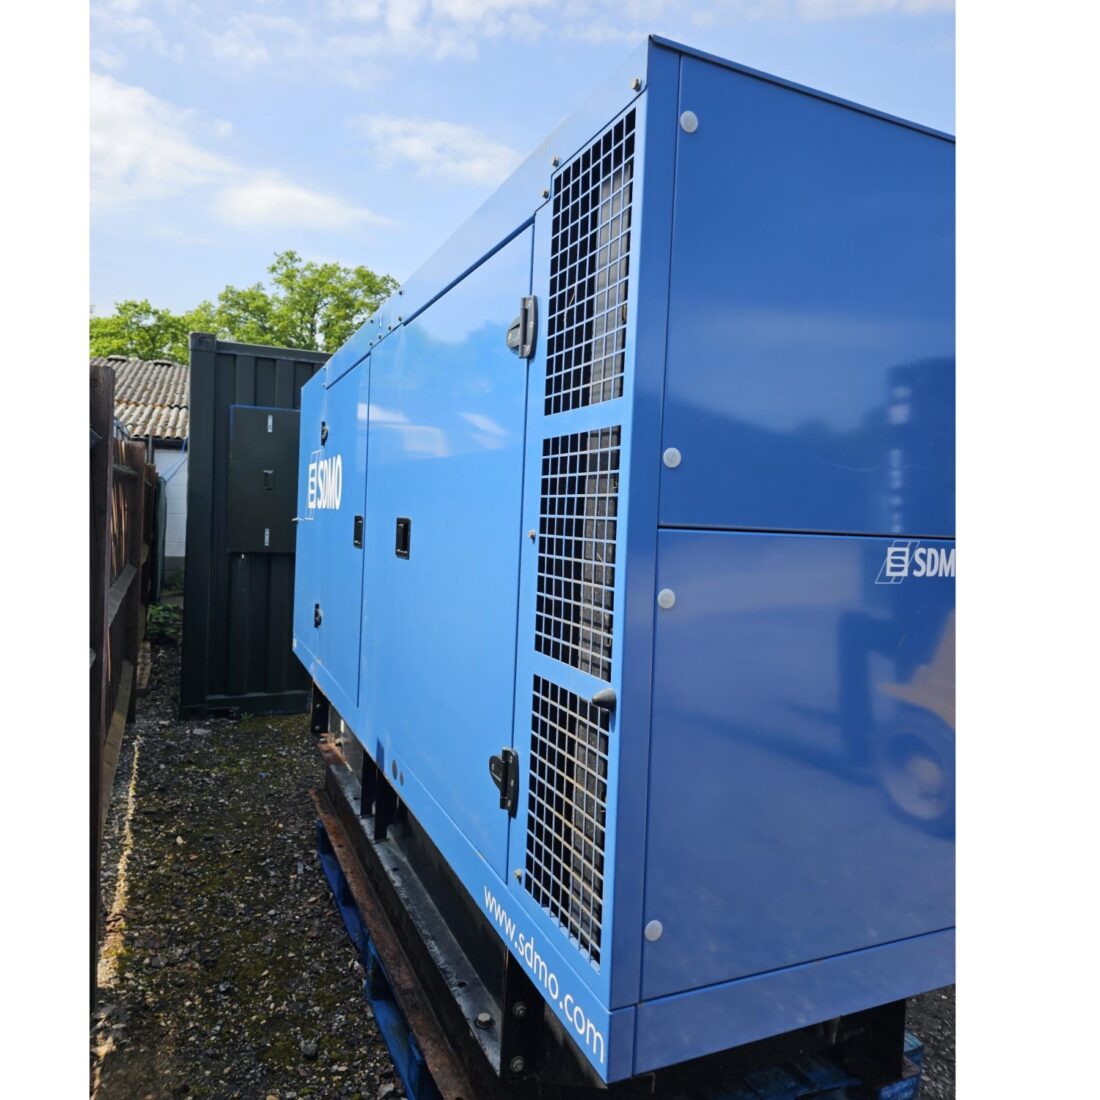 Used SDMO J165K 165KVA 3 Phase 400V Diesel Generator